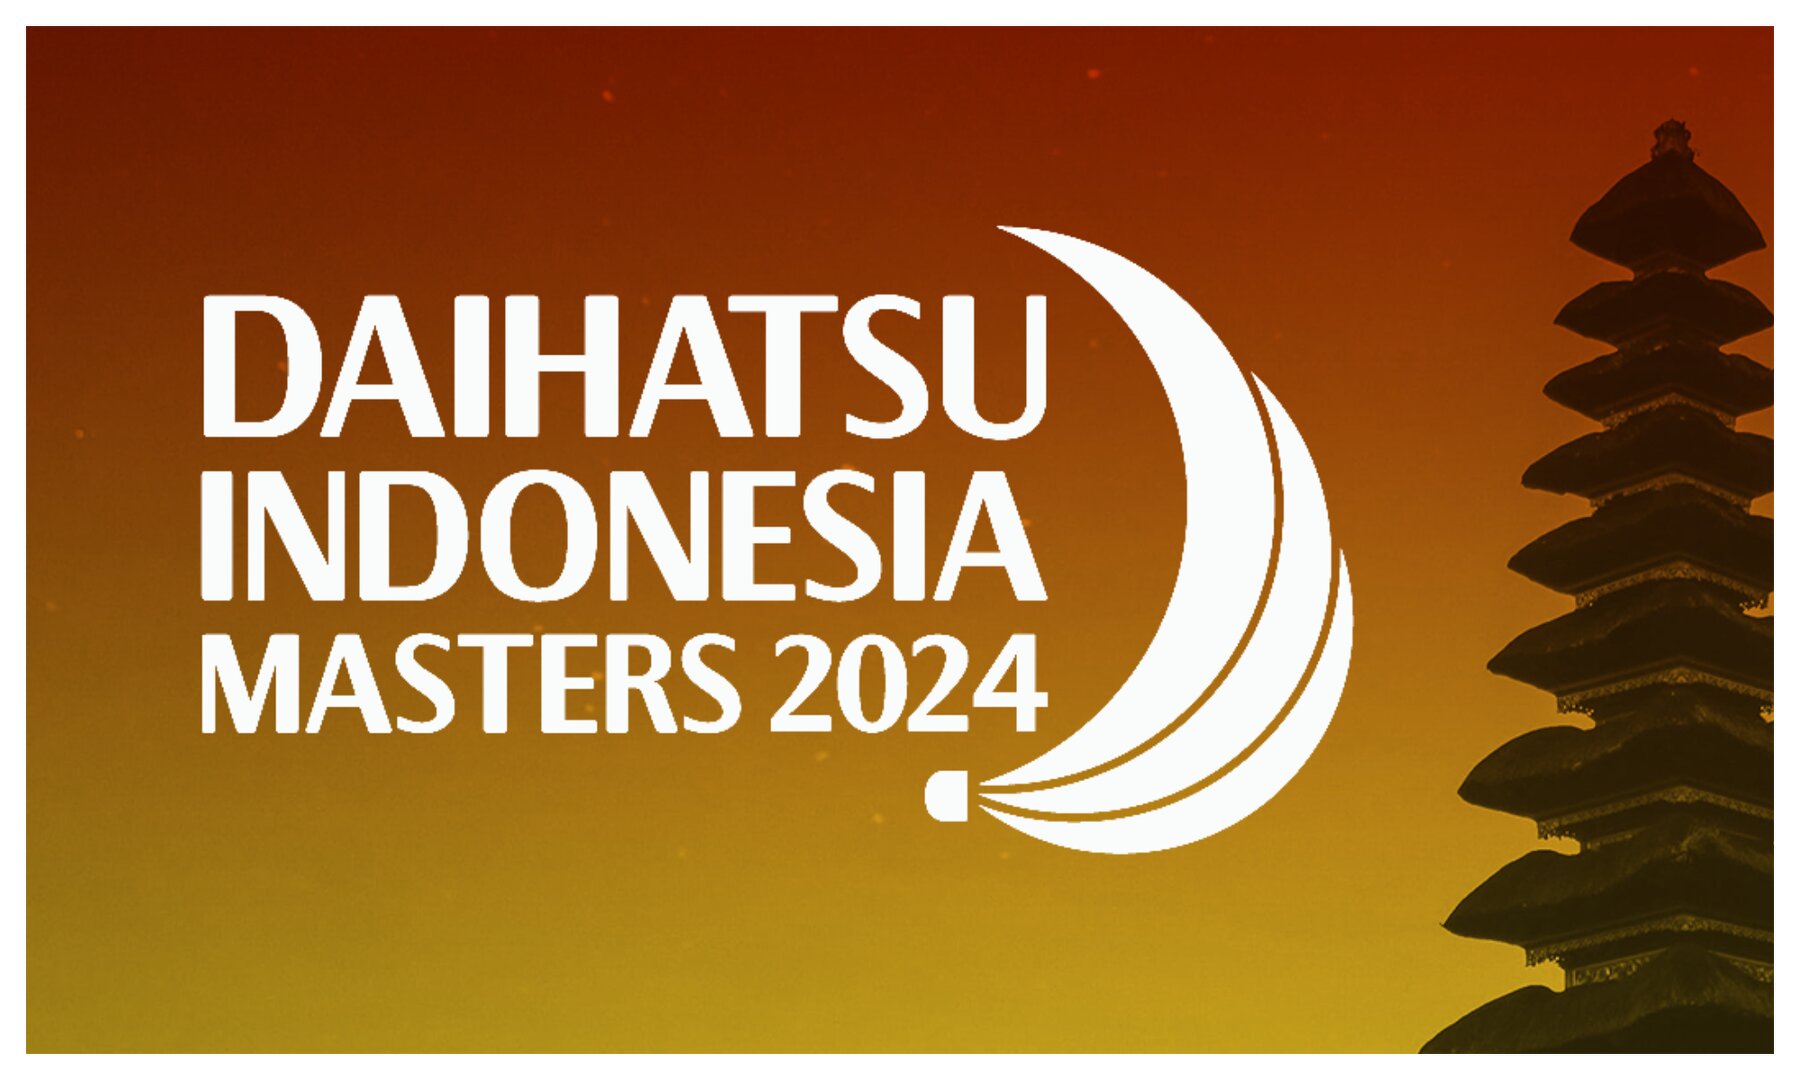 Dimana dan bagaimana cara nonton langsung BWF Indonesia Masters 2024 di Indonesia?